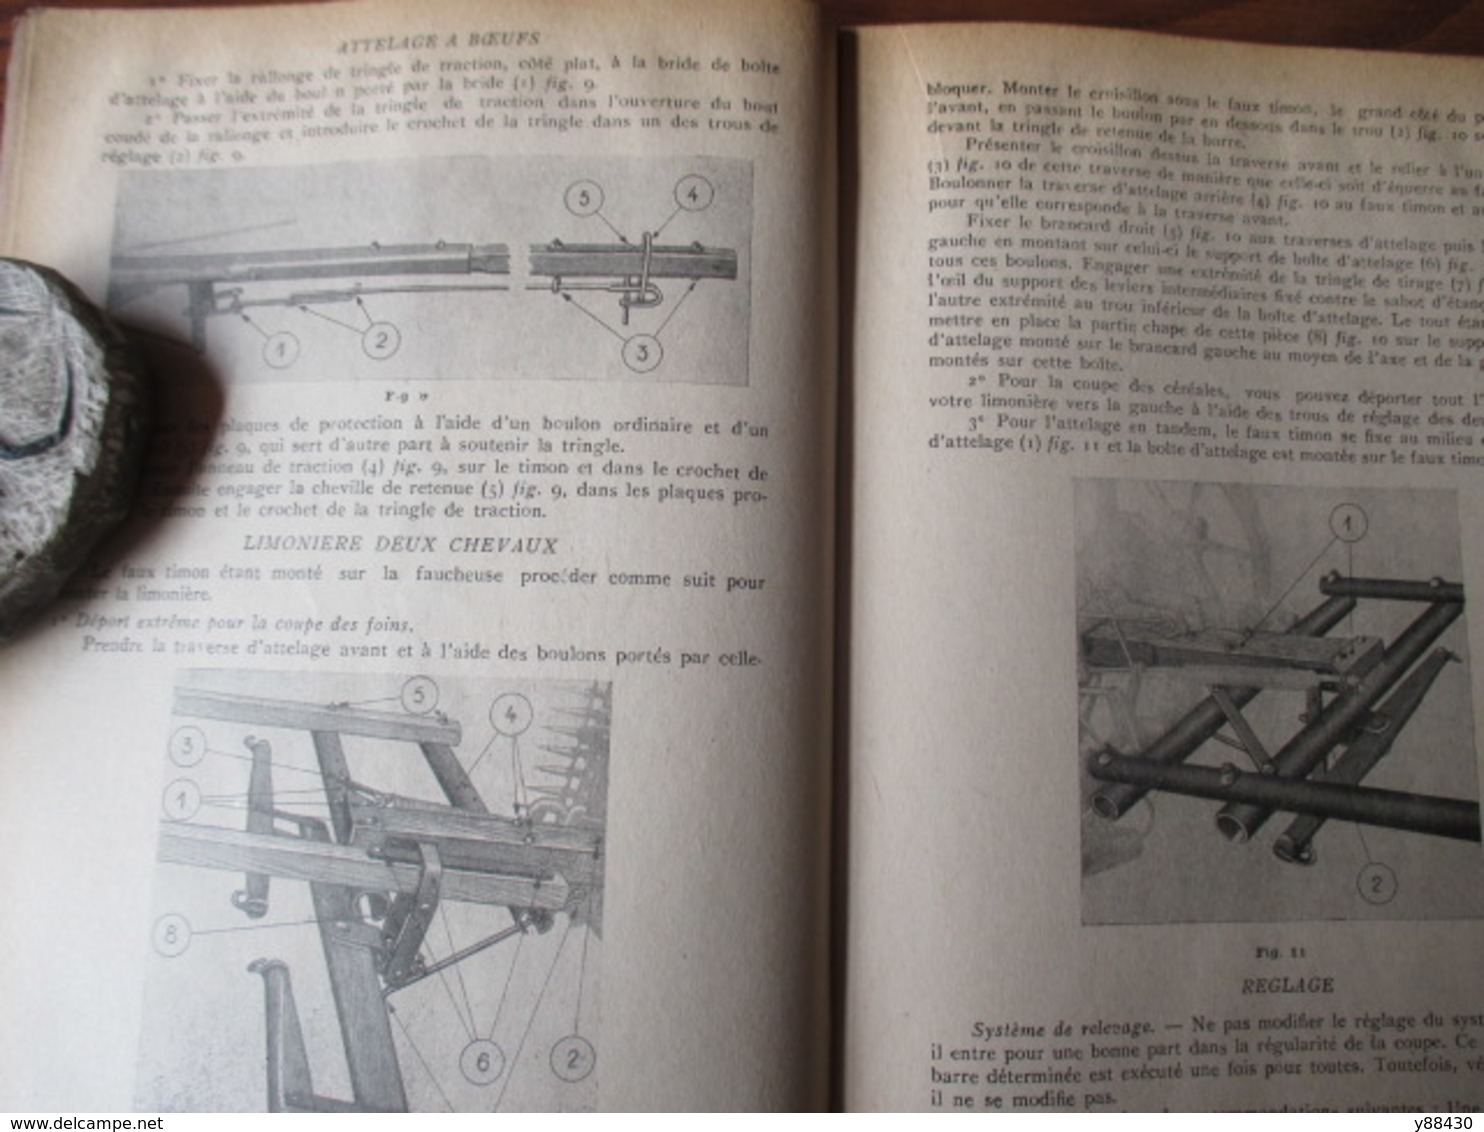 Livret pour FAUCHEUSE A 2 CHEVAUX  n° 25  - Ets DOLLE à VESOUL - année 1949 - 40 pages - 18 photos